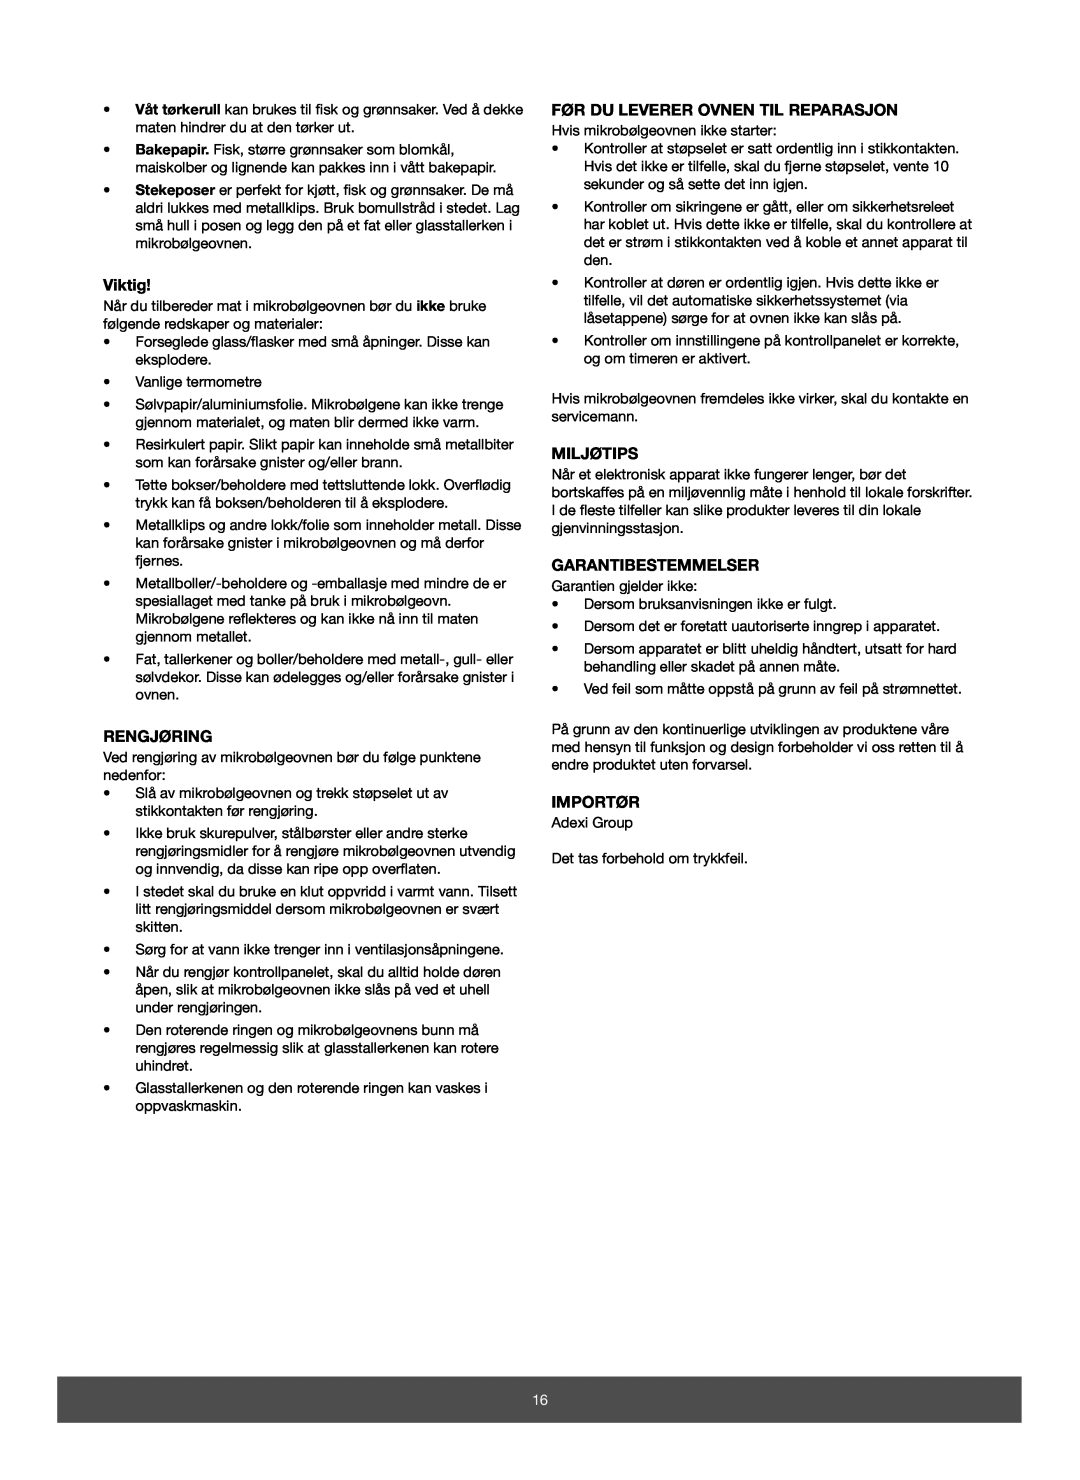 Melissa 653-082 manual Viktig, Rengjøring, Før Du Leverer Ovnen Til Reparasjon, Miljøtips, Garantibestemmelser, Importør 